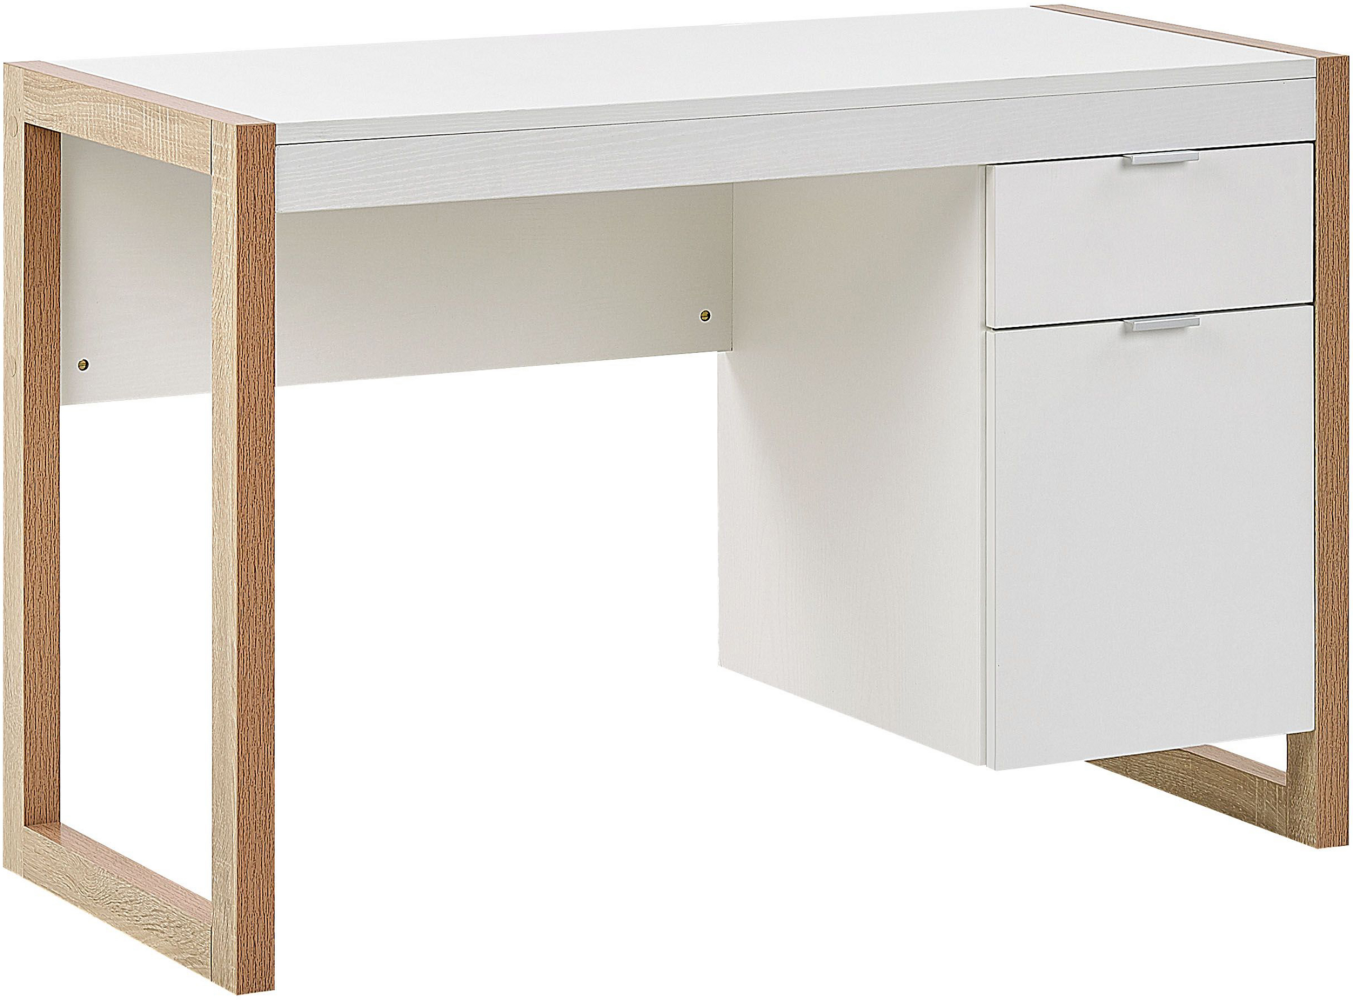 Schreibtisch weiß / heller Holzfarbton 110 x 50 cm Schublade Schrank JOHNSON Bild 1